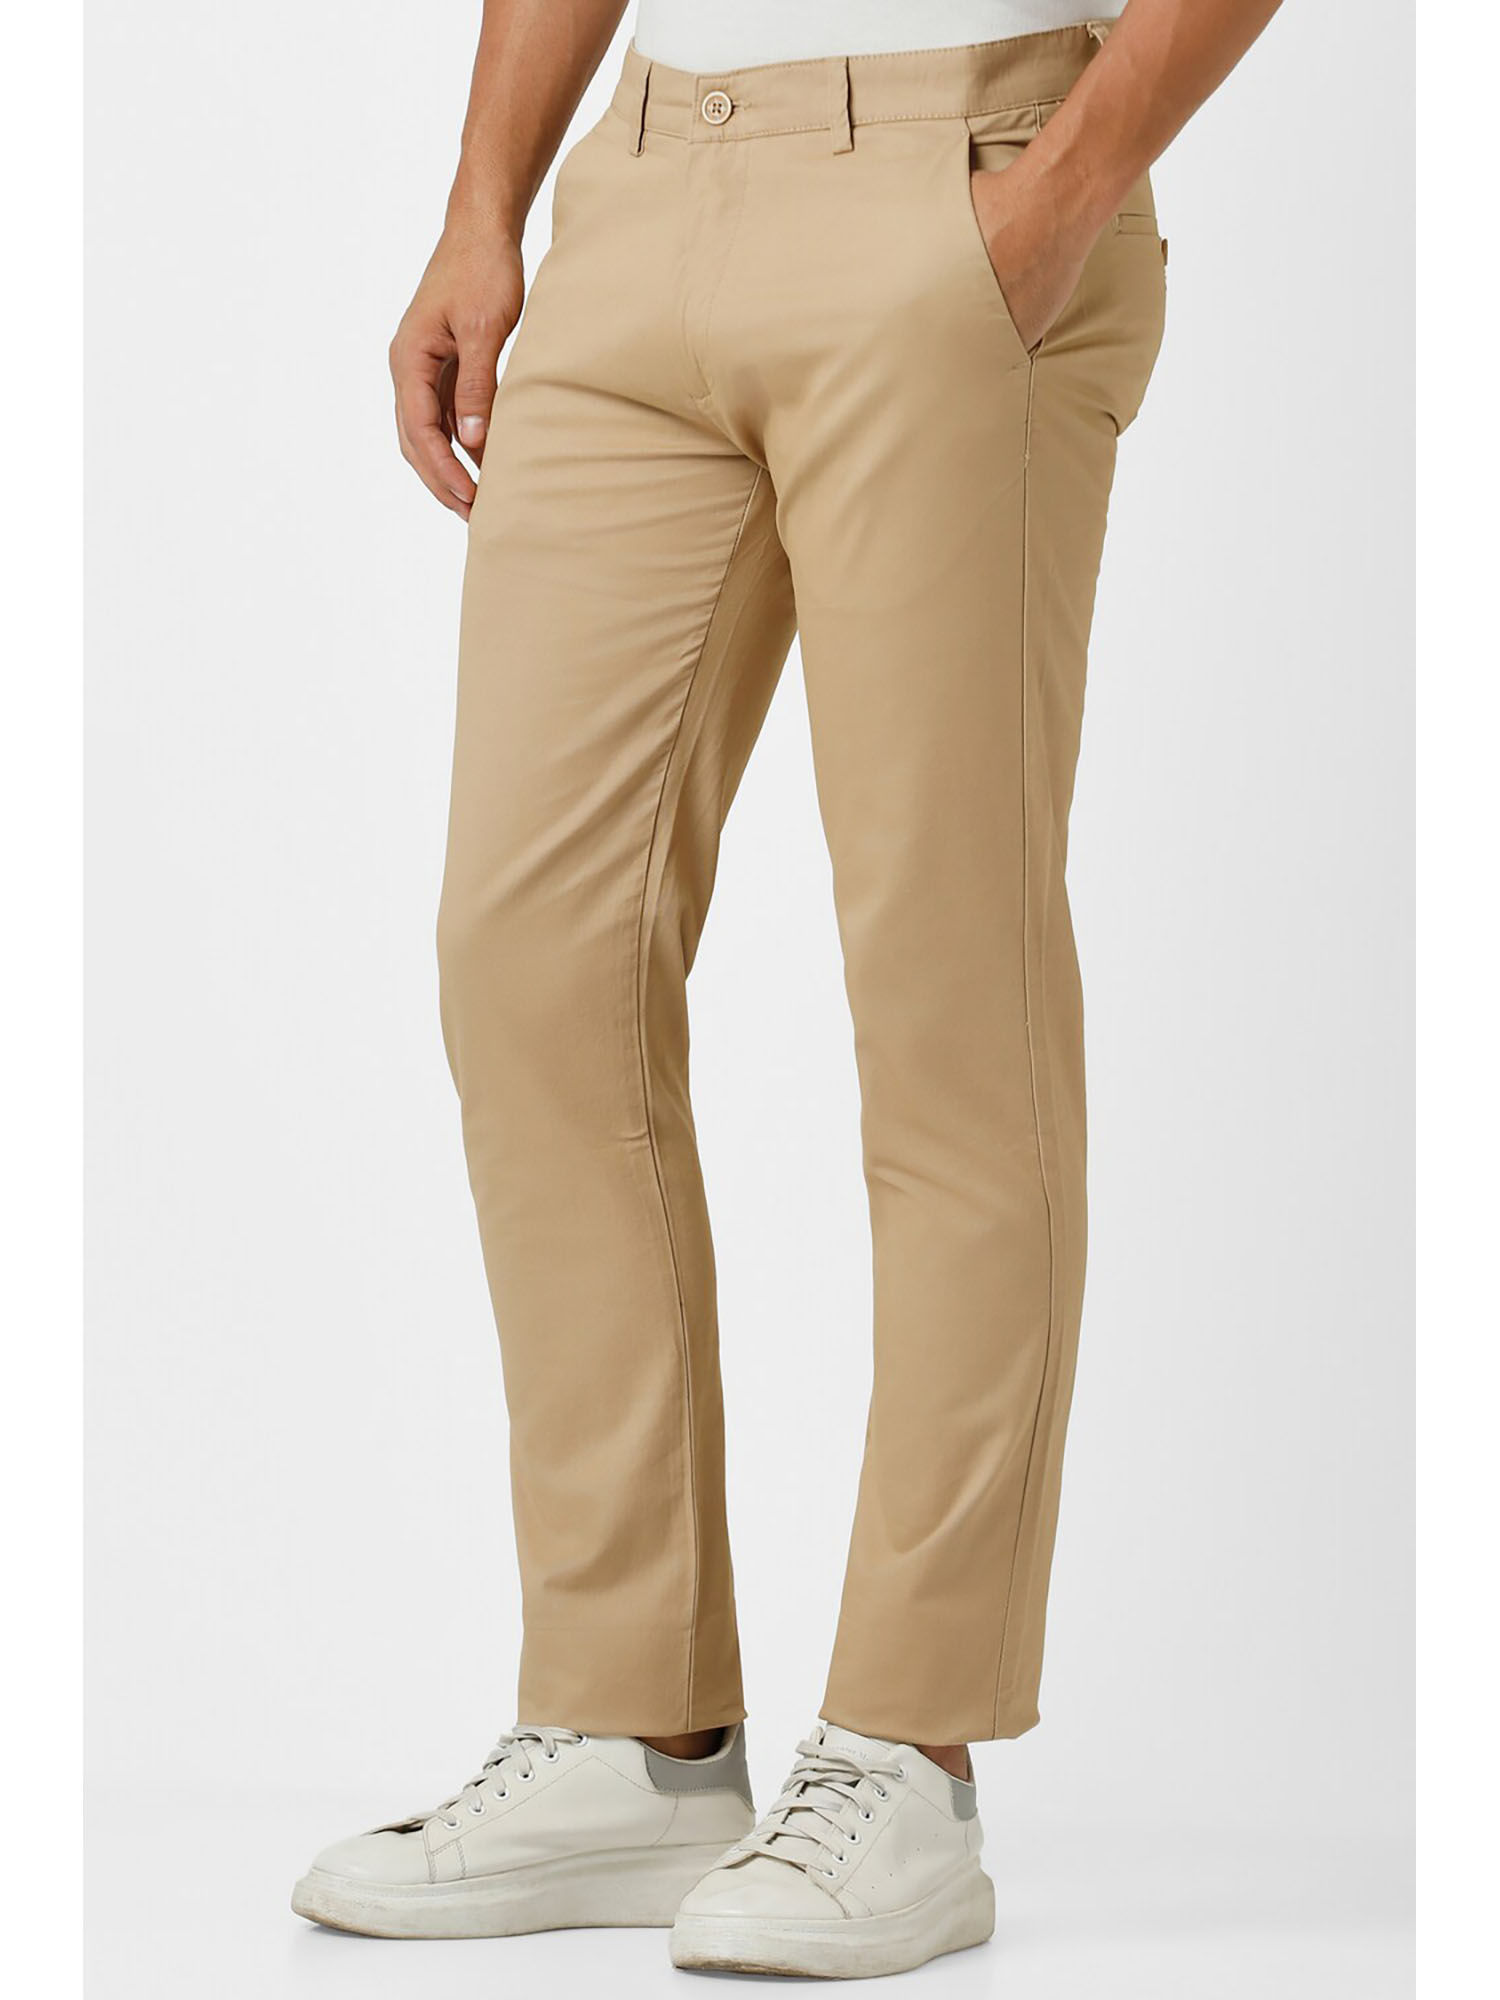 Jeans & Pants | Peter England Men's Super Slim Fit Casual Pants || Colour -  Gray || Size -32 | Freeup